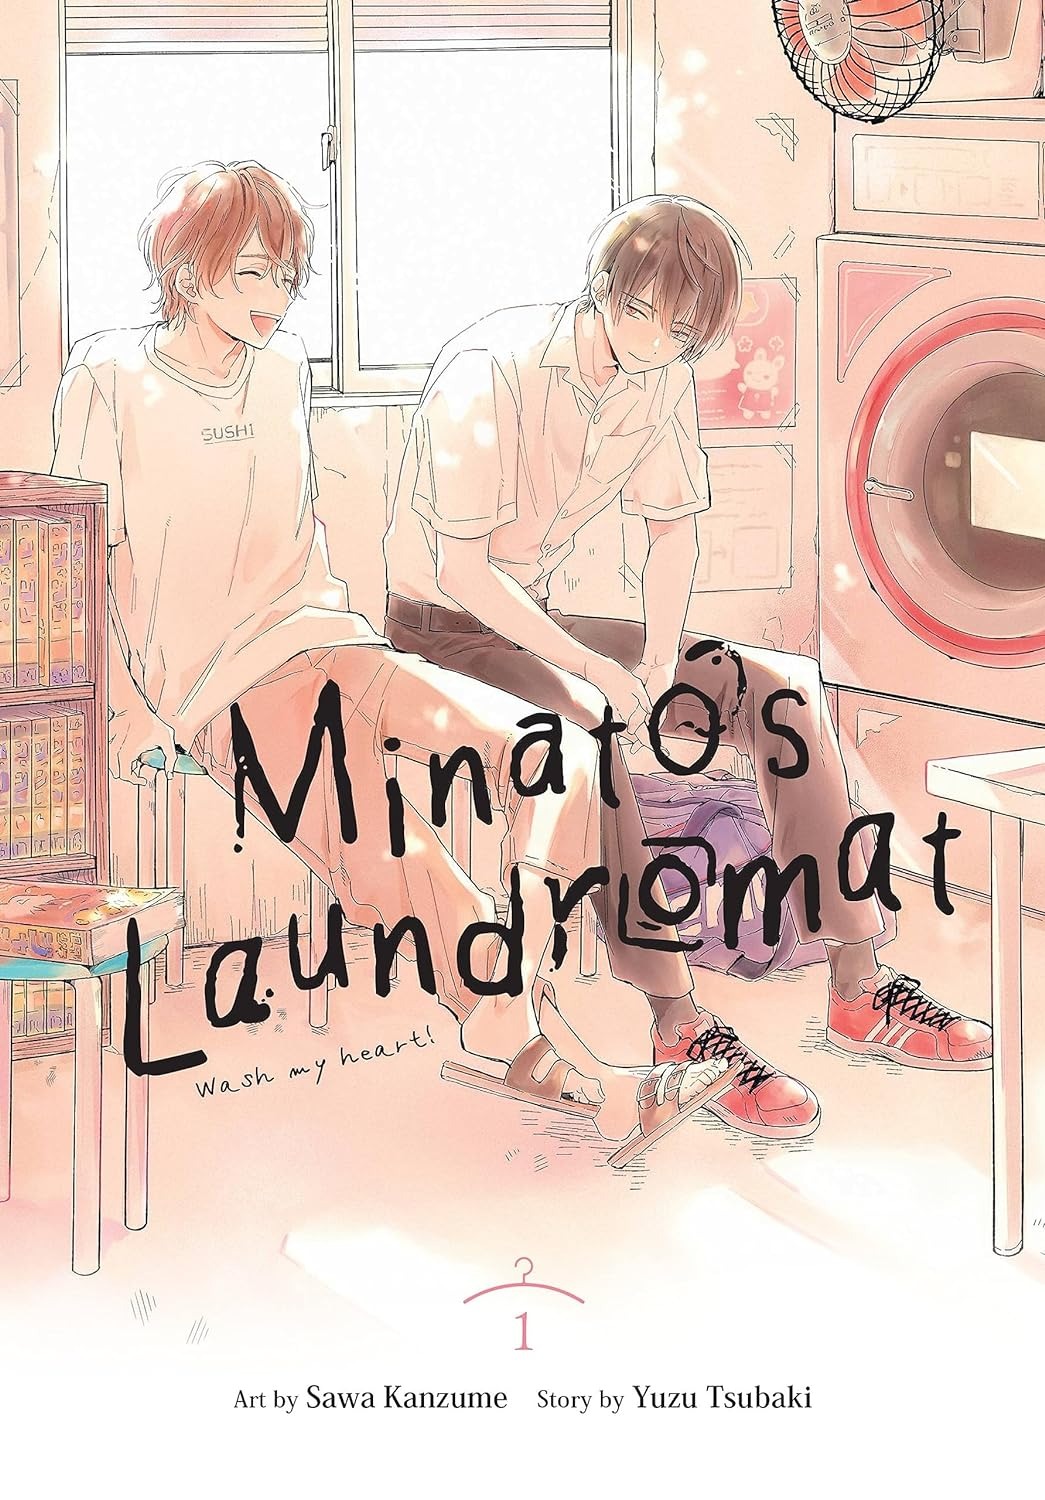 Minatos Laundromat Manga Volume 1